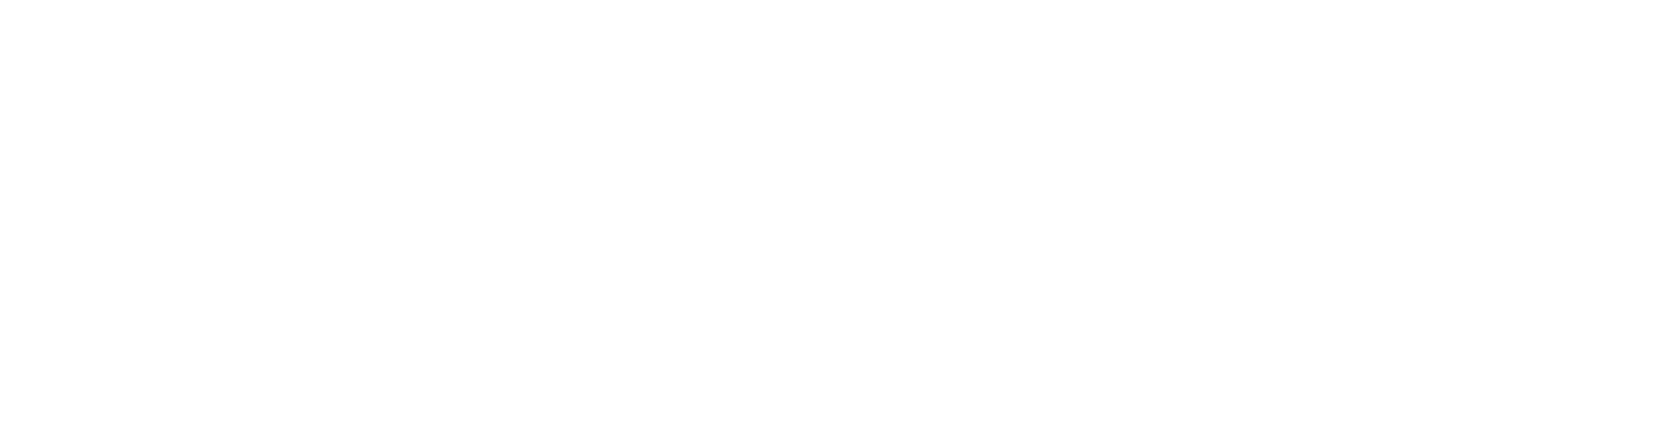 logo-itan